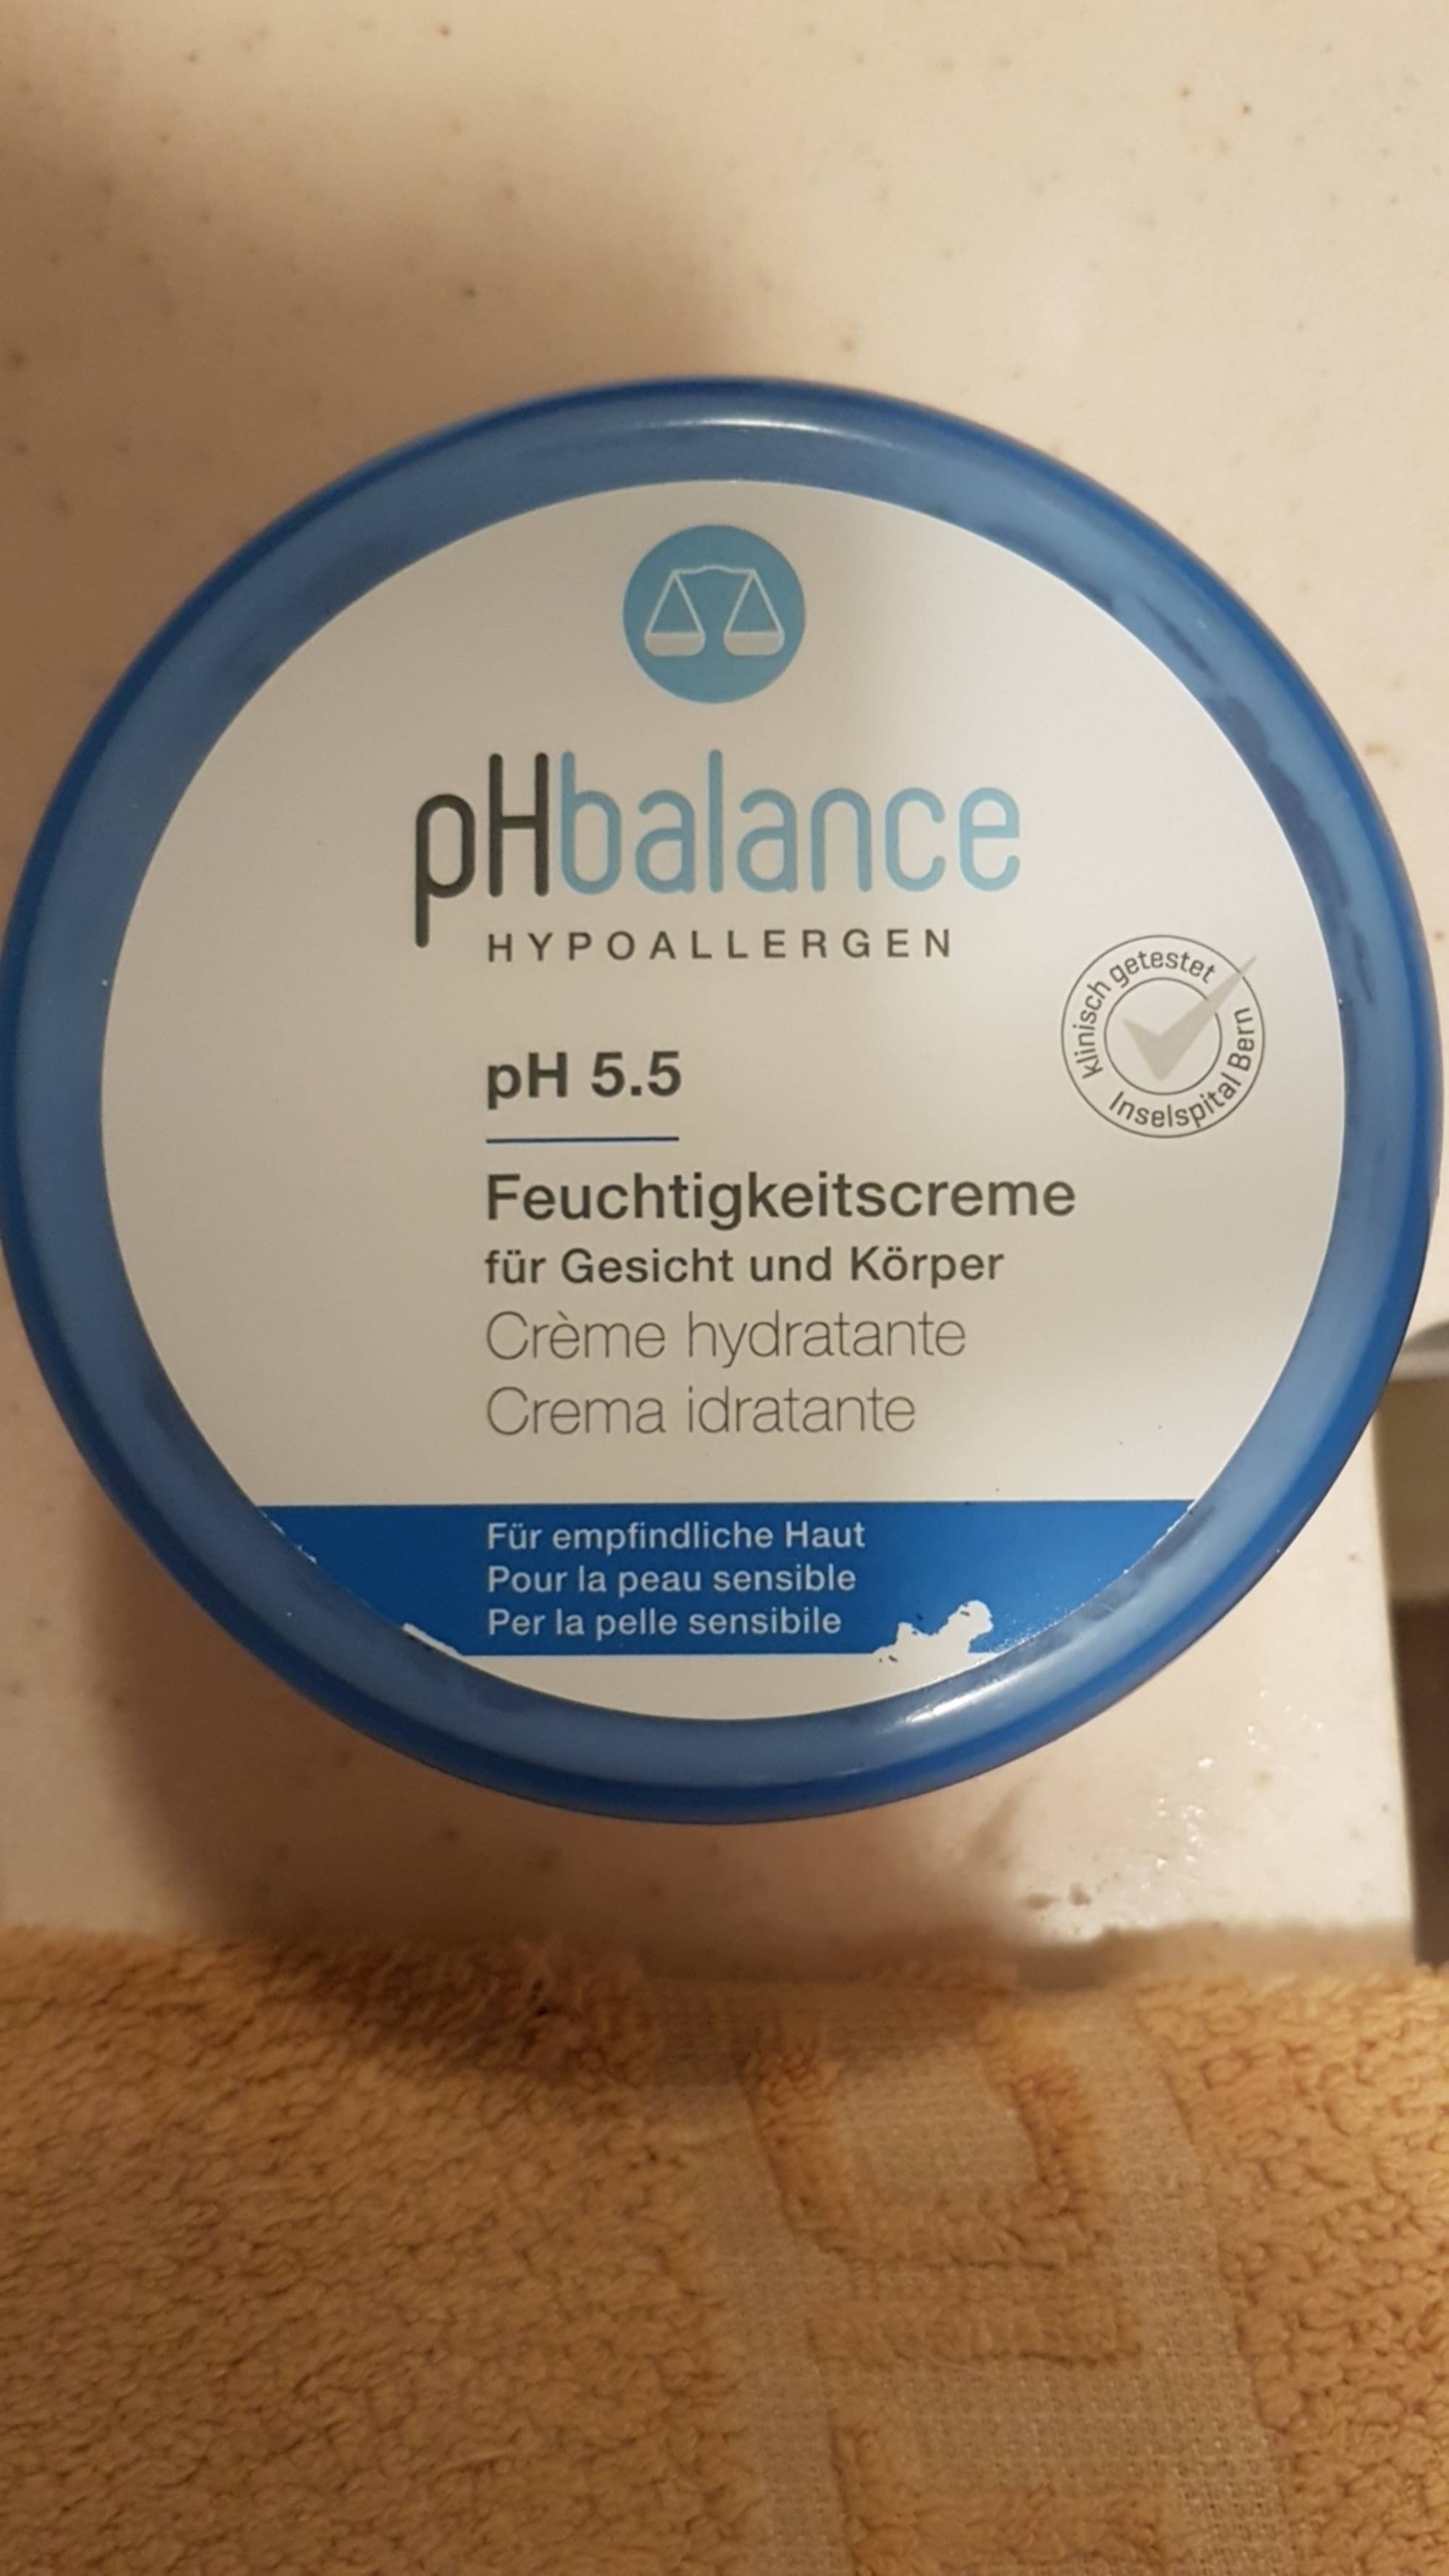 MIGROS - Ph balance ph 5.5 - Crème hydratante